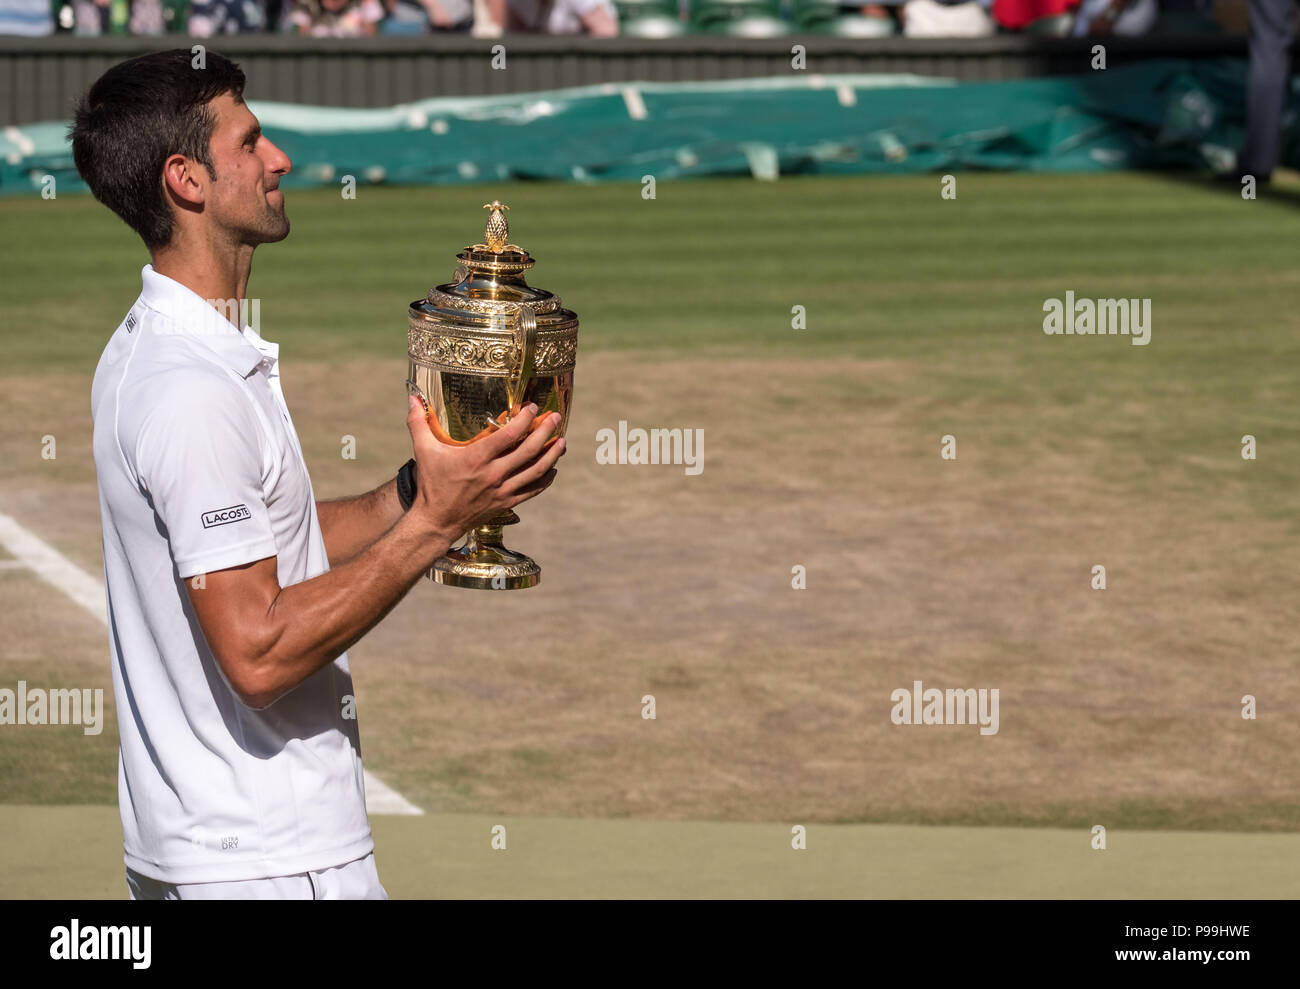 Novac Djokovic, el serbio, el jugador gana el torneo de Tenis de Wimbledon por cuarta vez. En la foto que está en el perfil, sosteniendo su trofeo en el centro de la cancha. Foto de stock